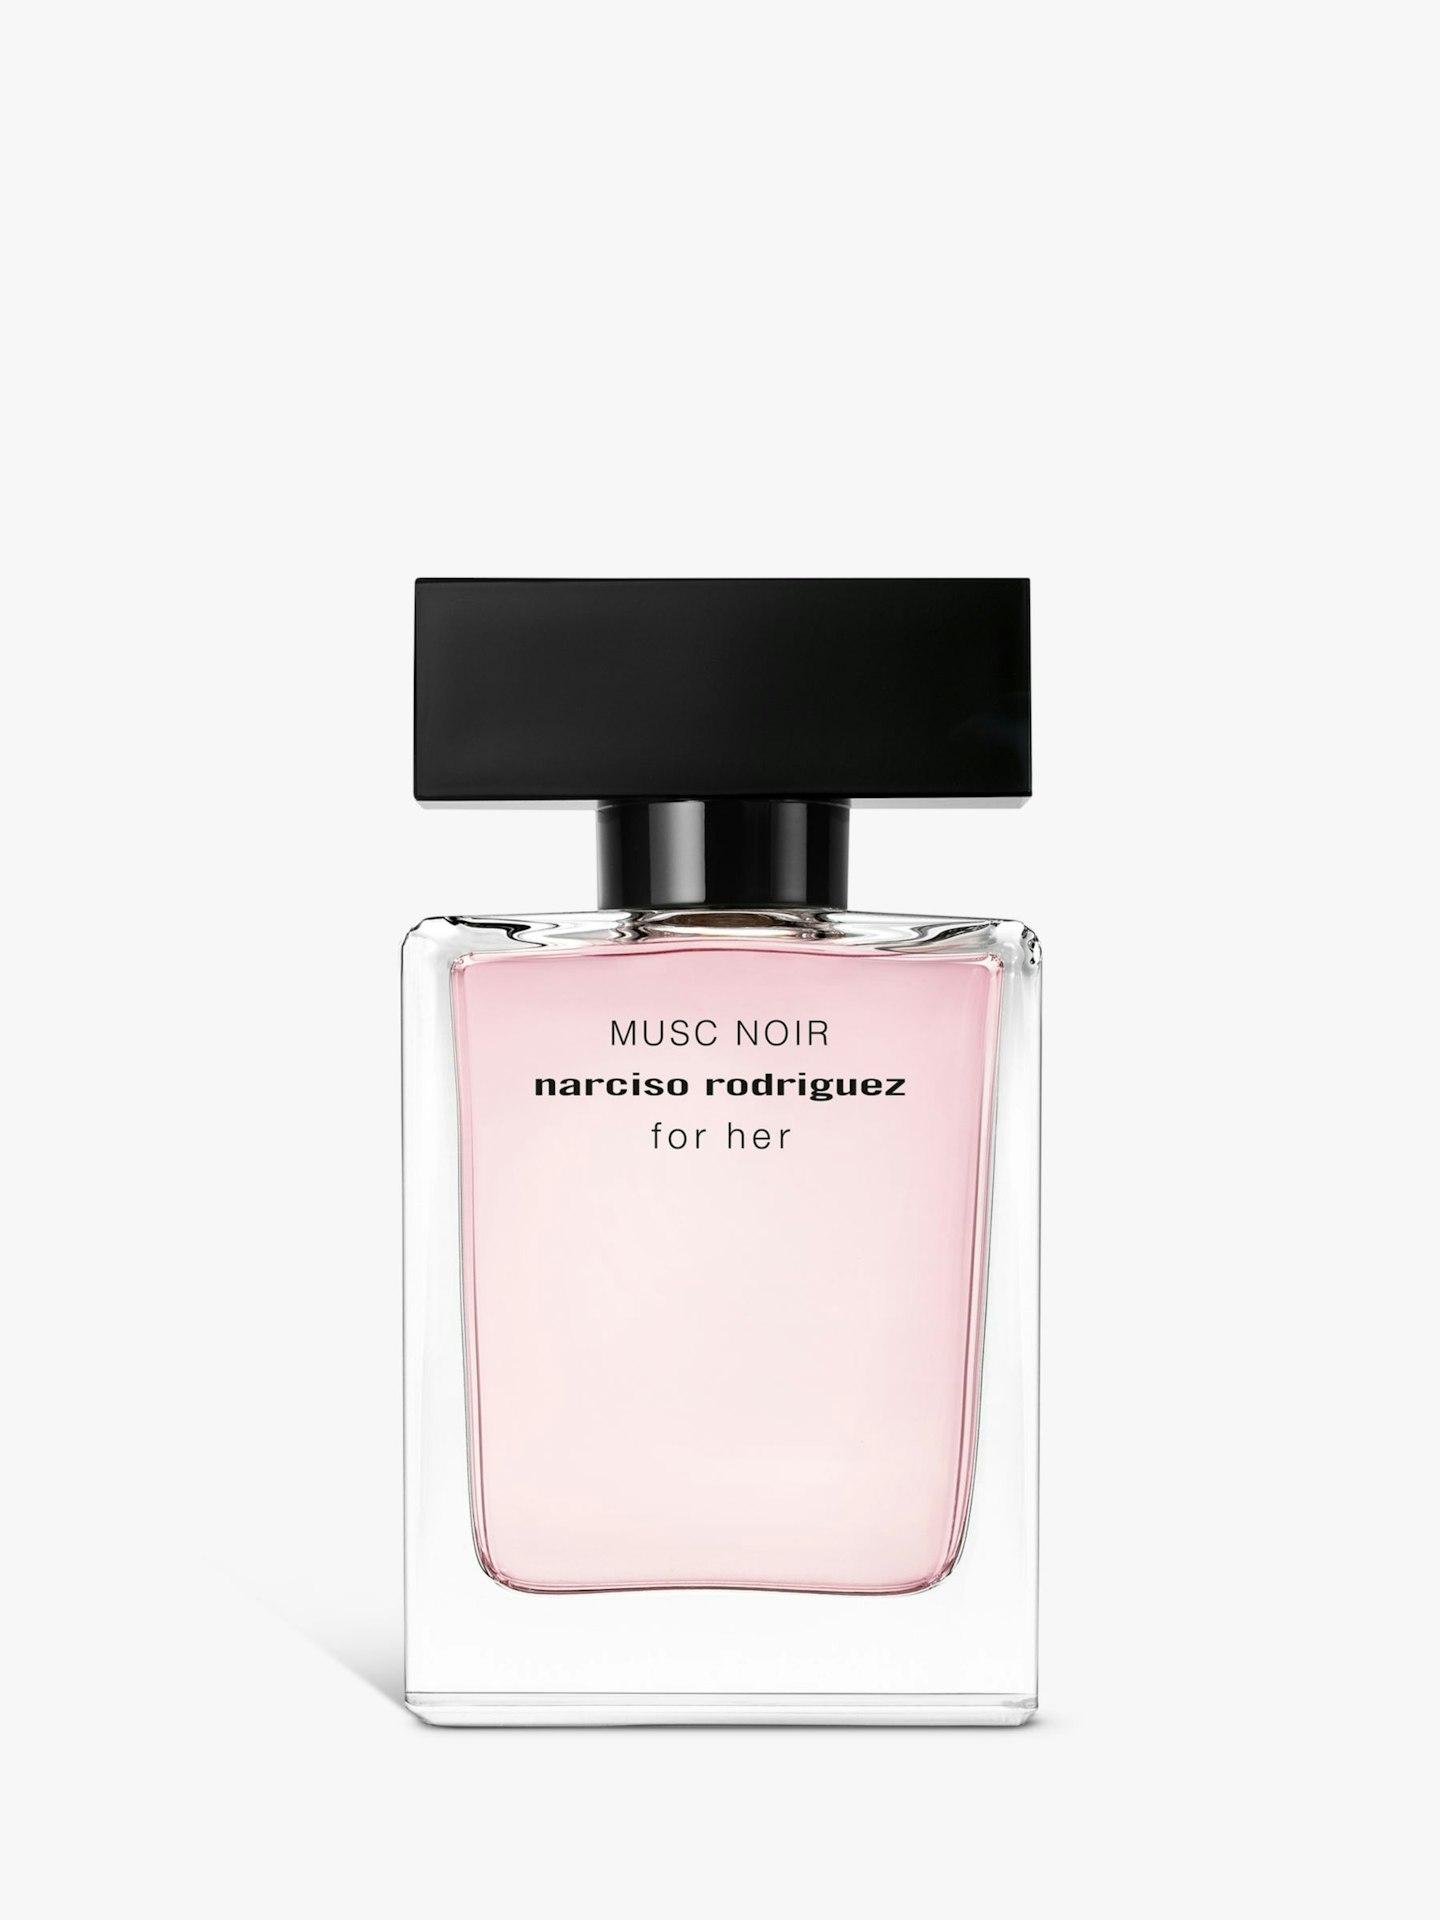 Narciso Rodriguez For Her Musc Noir Eau de Parfum, £52 for 30ml